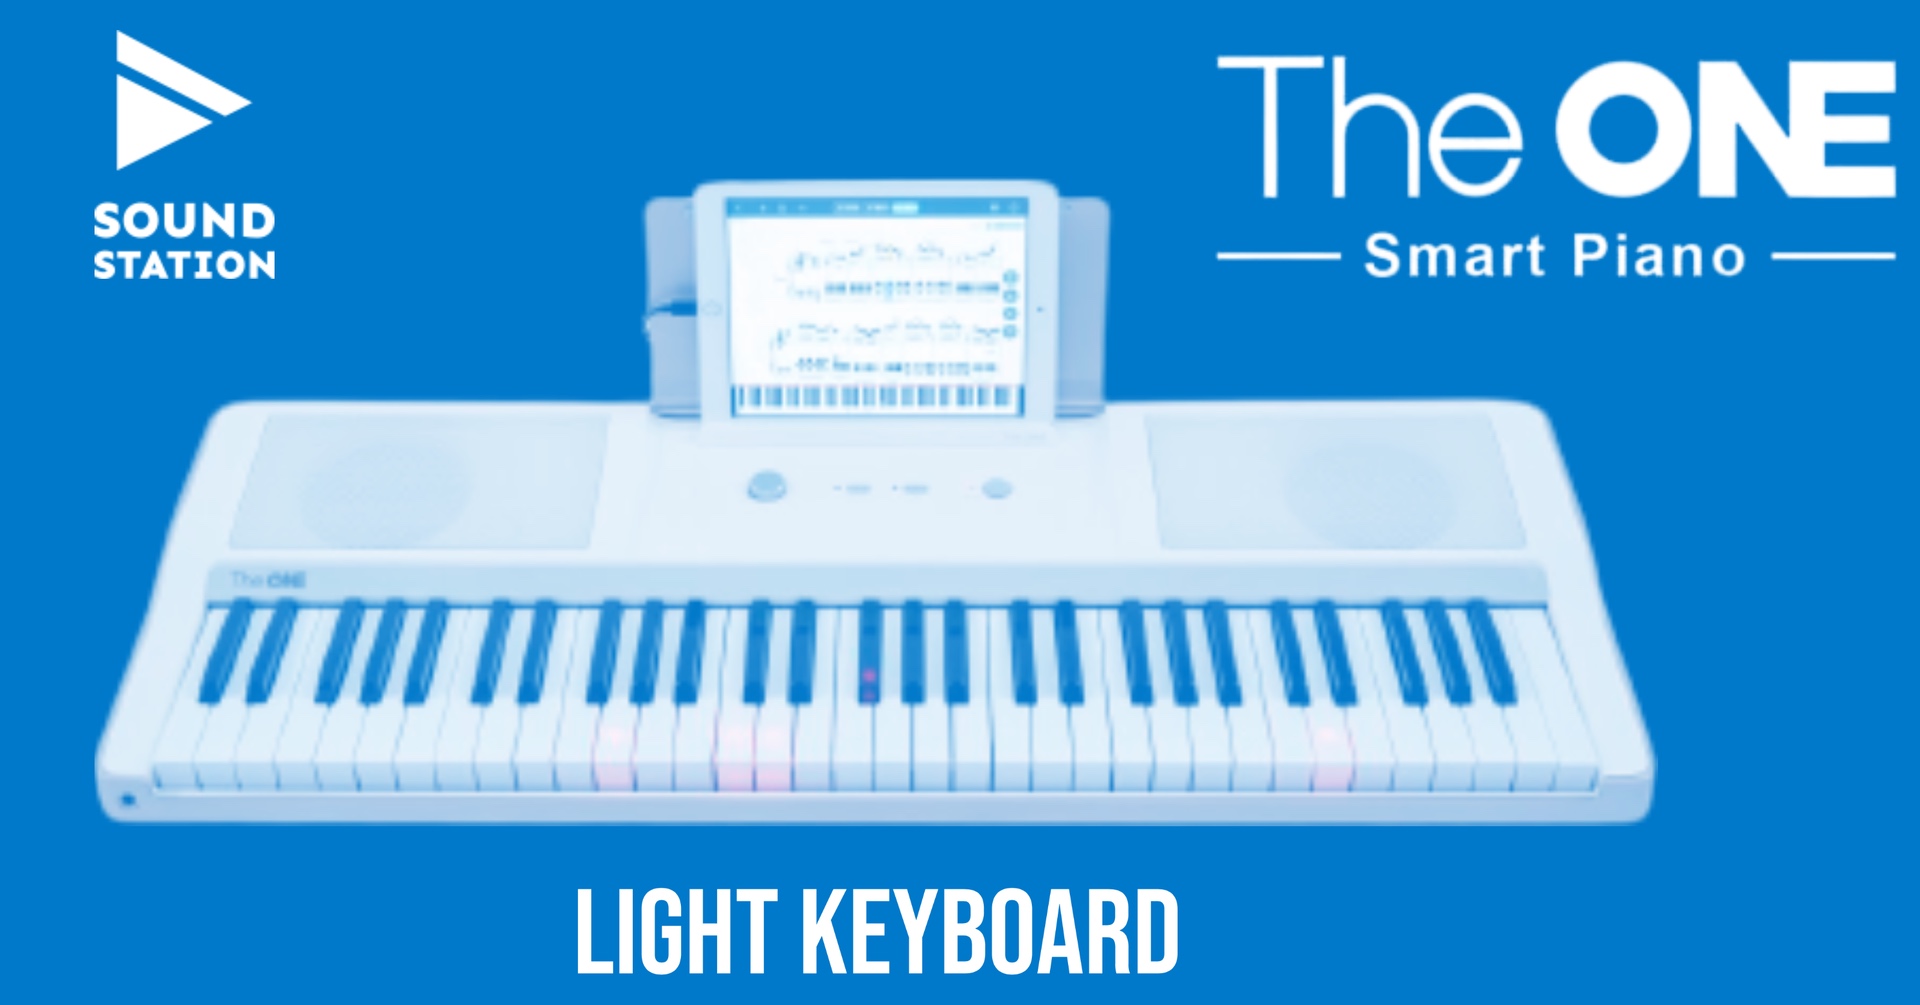 Kilka słów o The ONE Light Keyboard